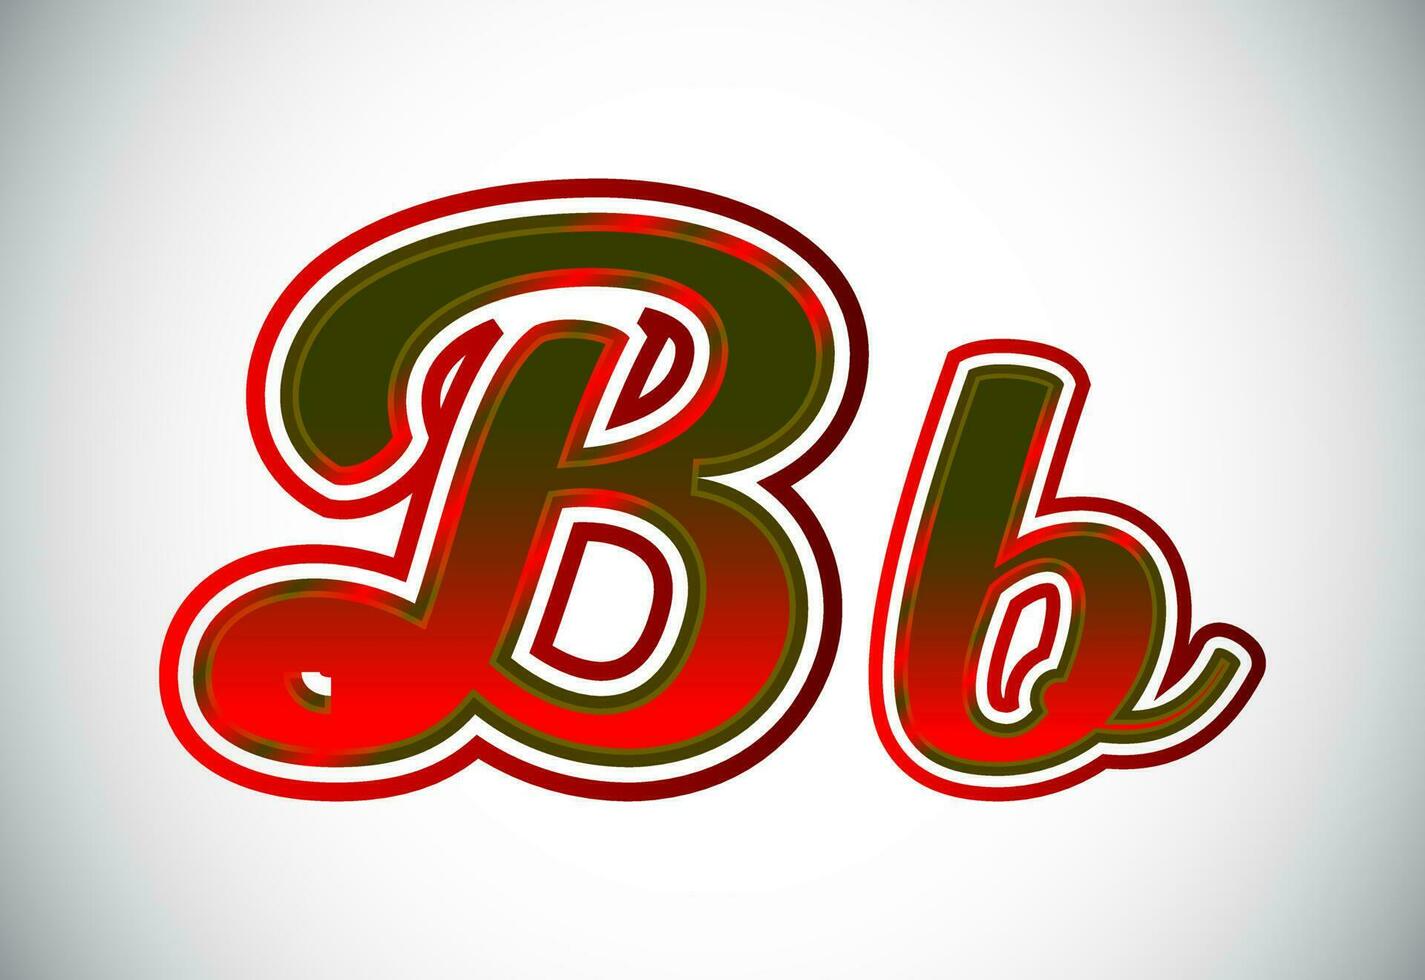 engelsk övre och lägre fall brev b. grafisk alfabet symbol för företags- företag identitet vektor